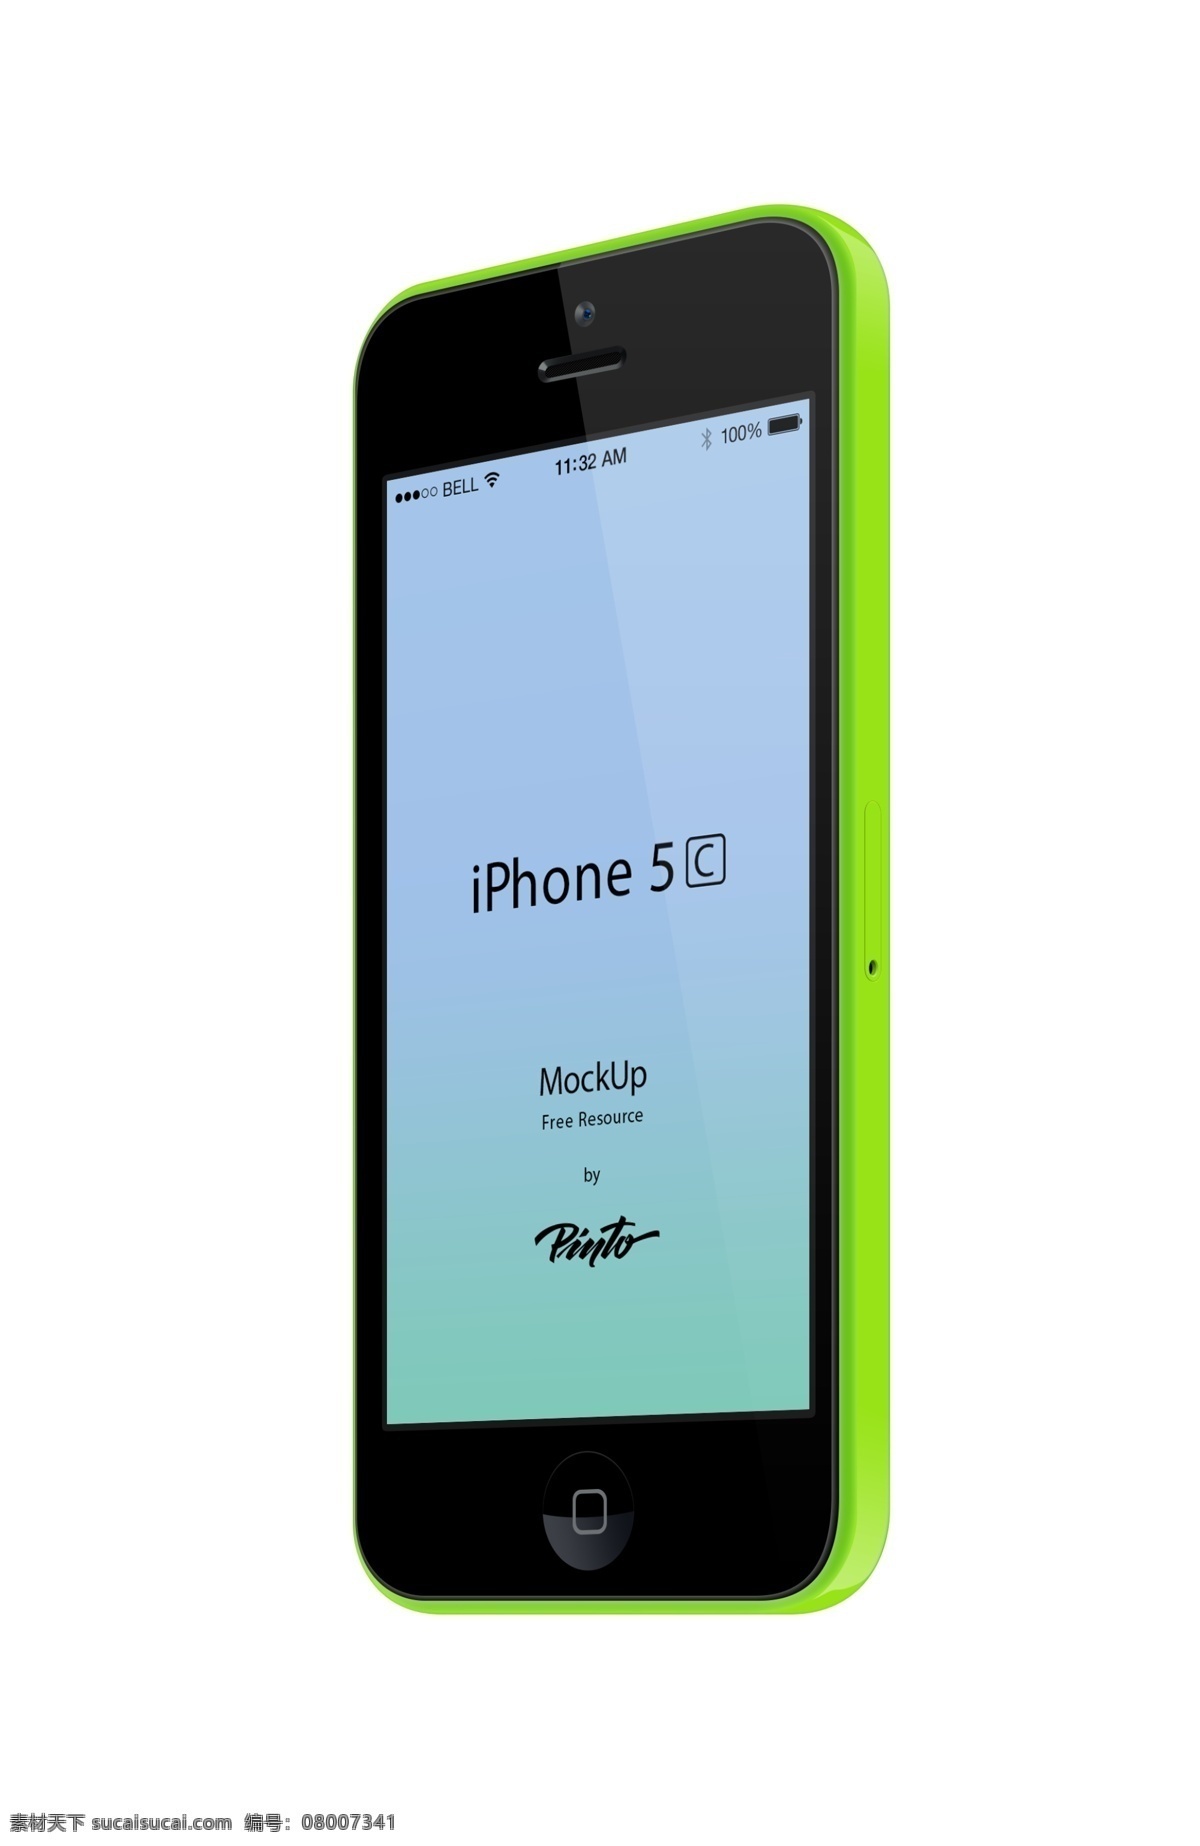 5种颜色模版 苹果 iphone5c 模板设计 设计模板 设计素材 设计图 手机设计 手机高清图片 网页素材 网页模板